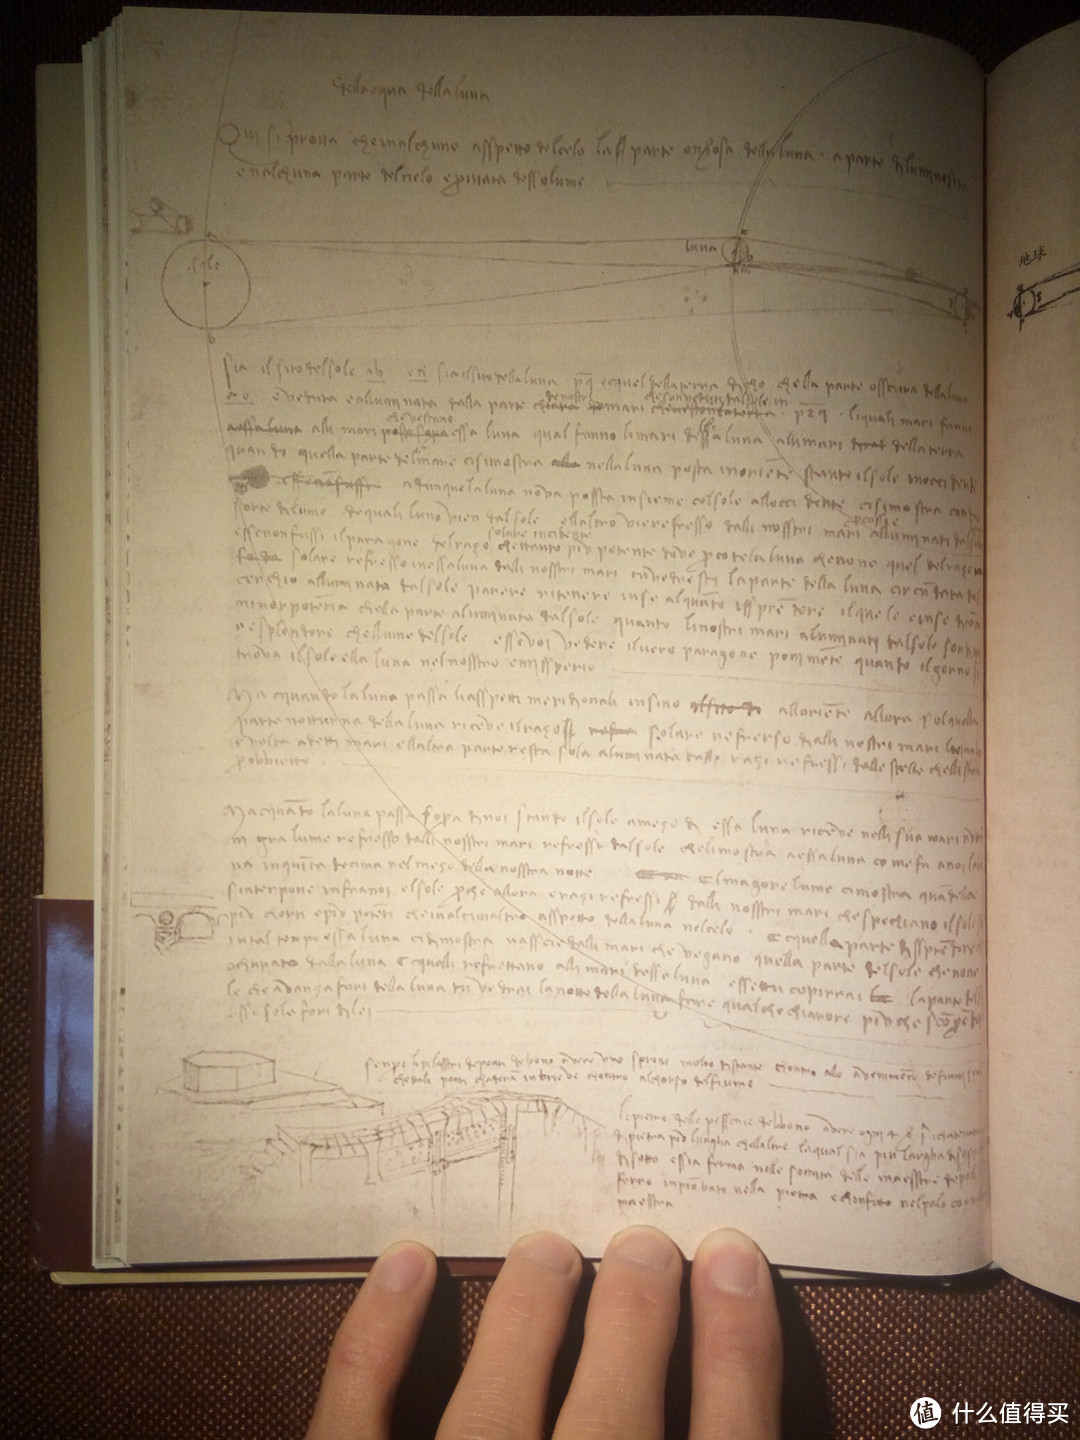 世界上最昂贵的图书-达芬奇手稿